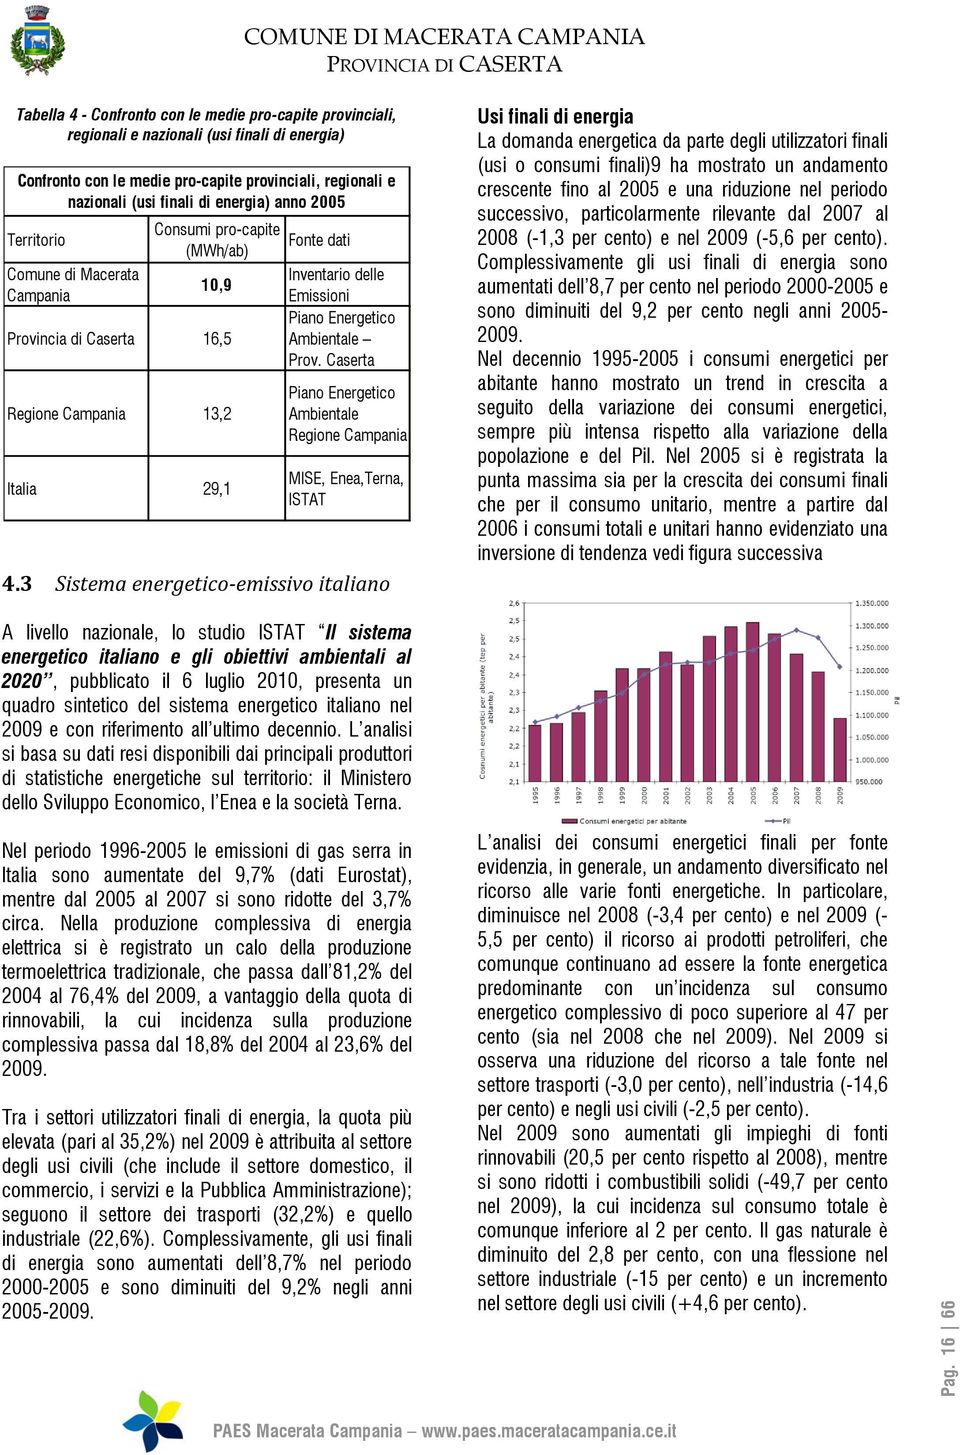 Ambientale Prov. Caserta Piano Energetico Ambientale Regione Campania MISE, Enea,Terna, ISTAT 4.